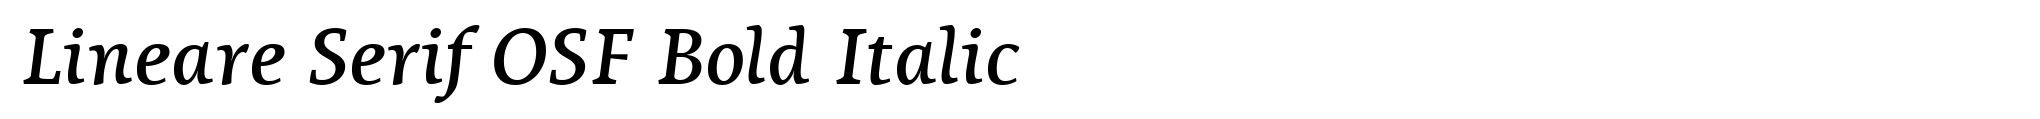 Lineare Serif OSF Bold Italic image